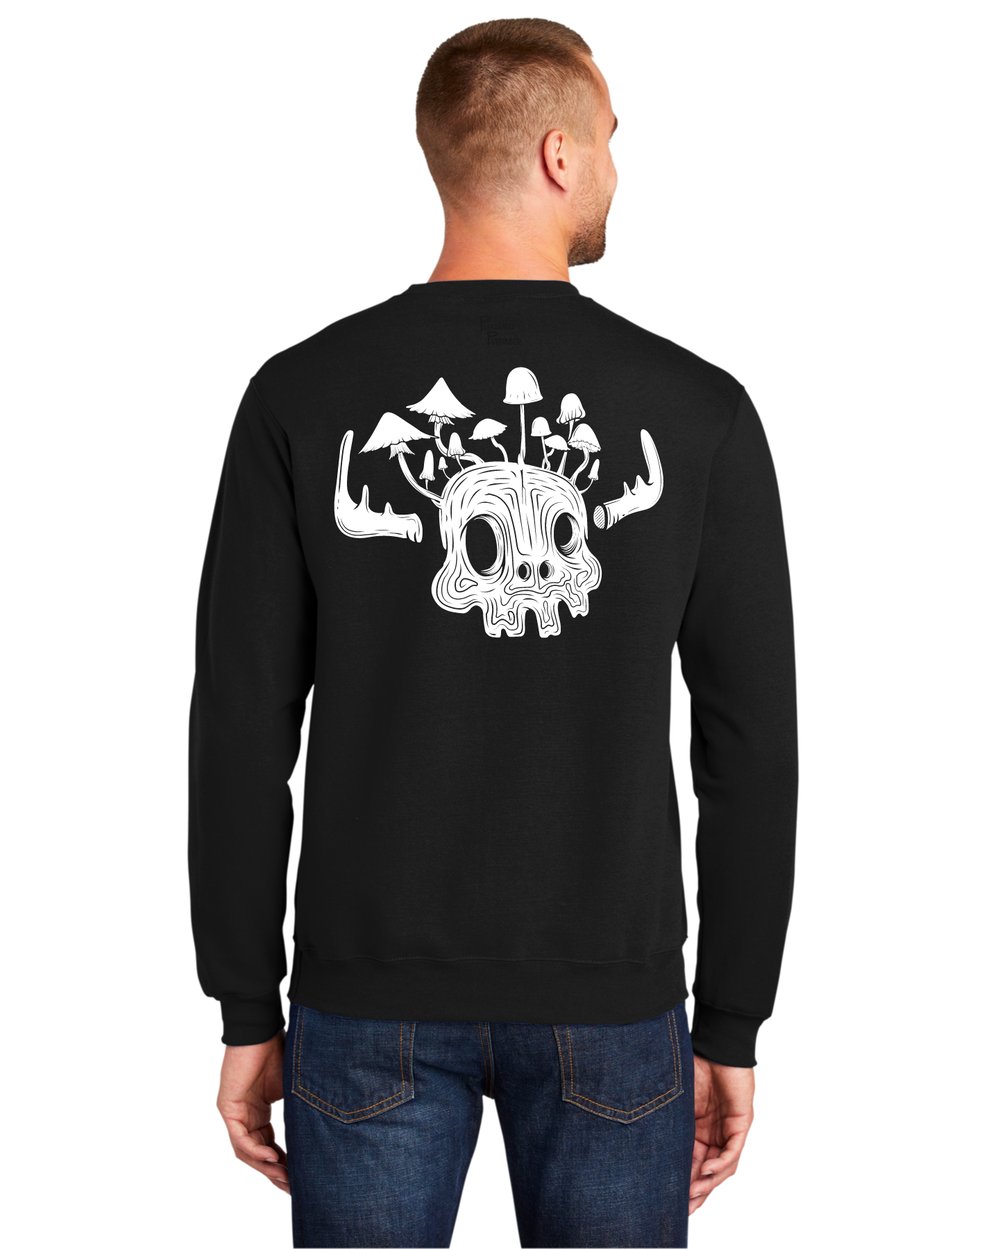 Mushroom Moose: Light Crew Sweatshirt